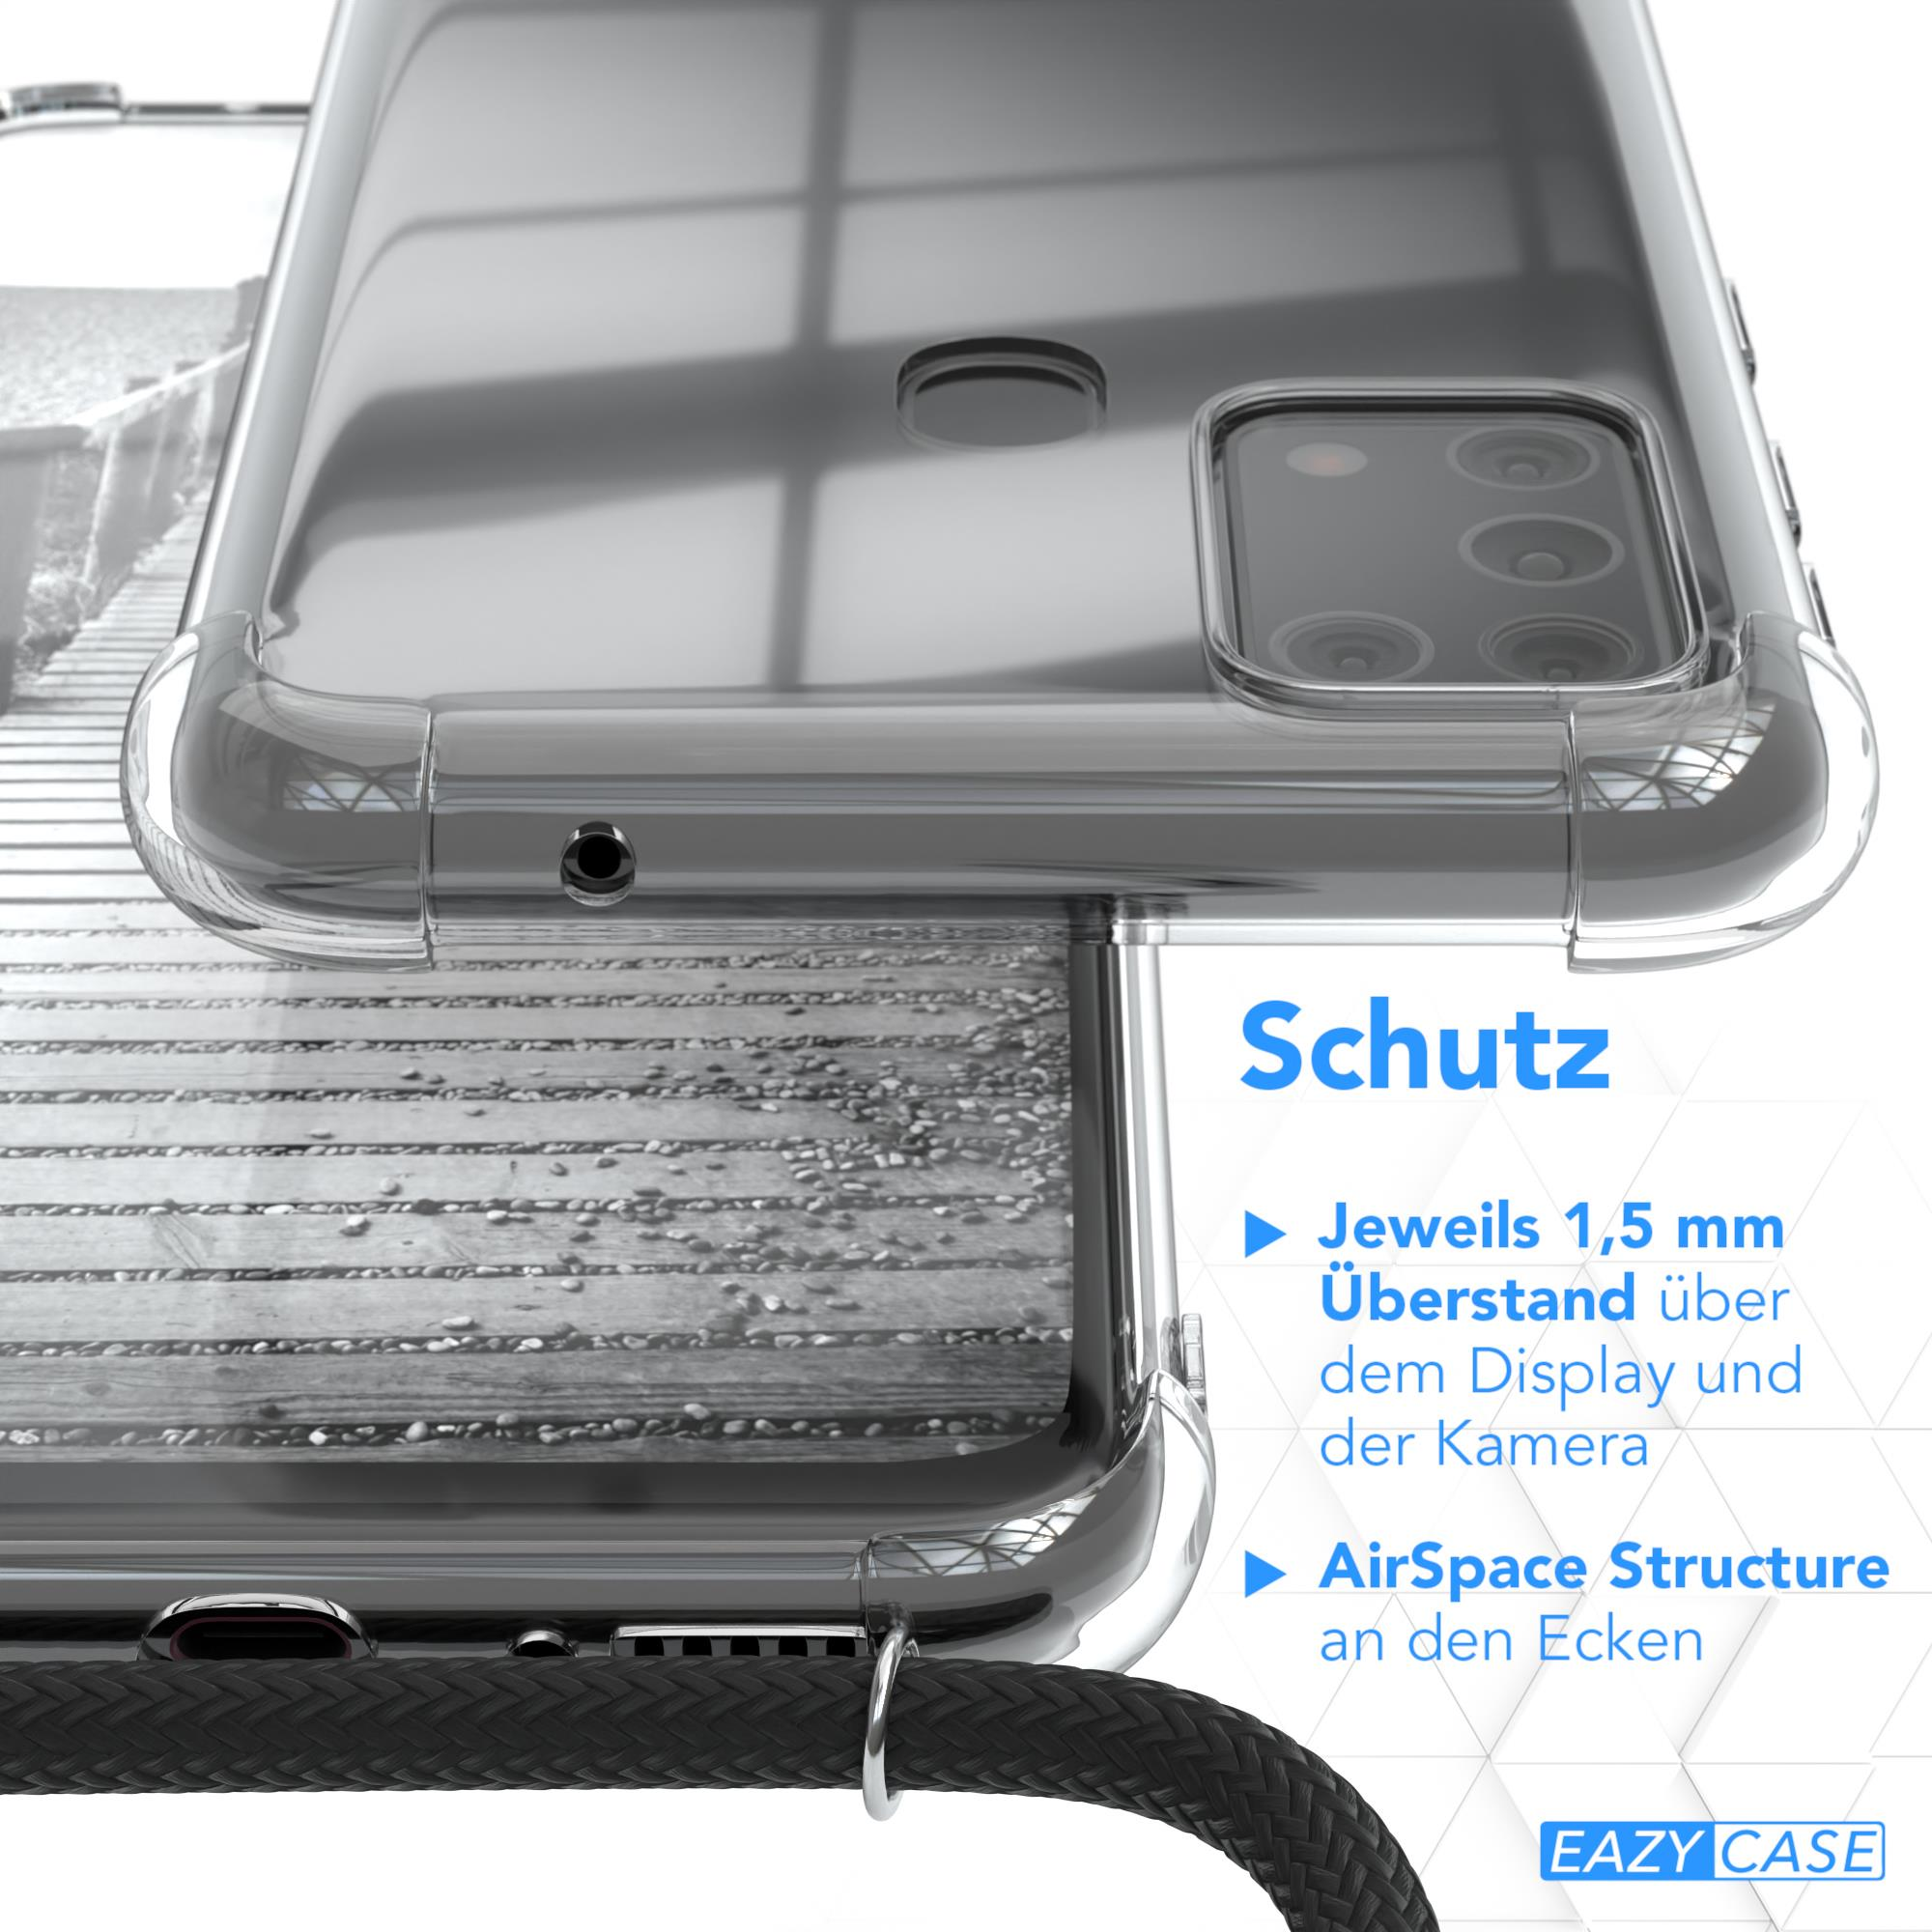 EAZY CASE Umhängetasche, M31, extra Samsung, Anthrazit Grau Metall Kordel Handykette + Galaxy Schwarz